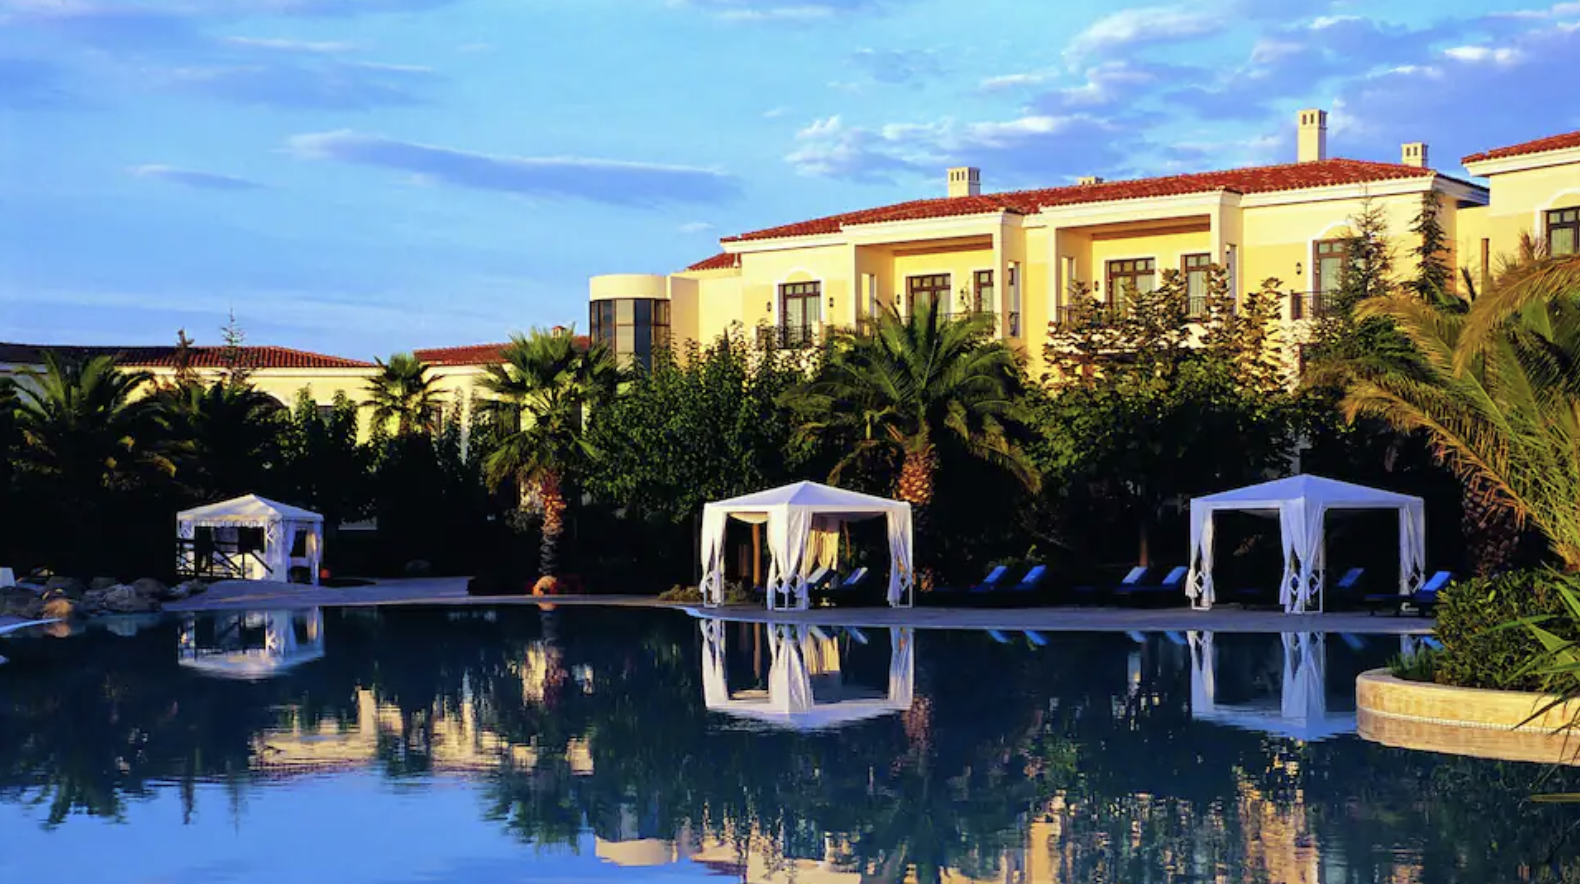 Πώς είναι να μένεις διαδοχικά σε 5 κορυφαία ξενοδοχεία της Θεσσαλονίκης – Αυτή είναι η εμπειρία